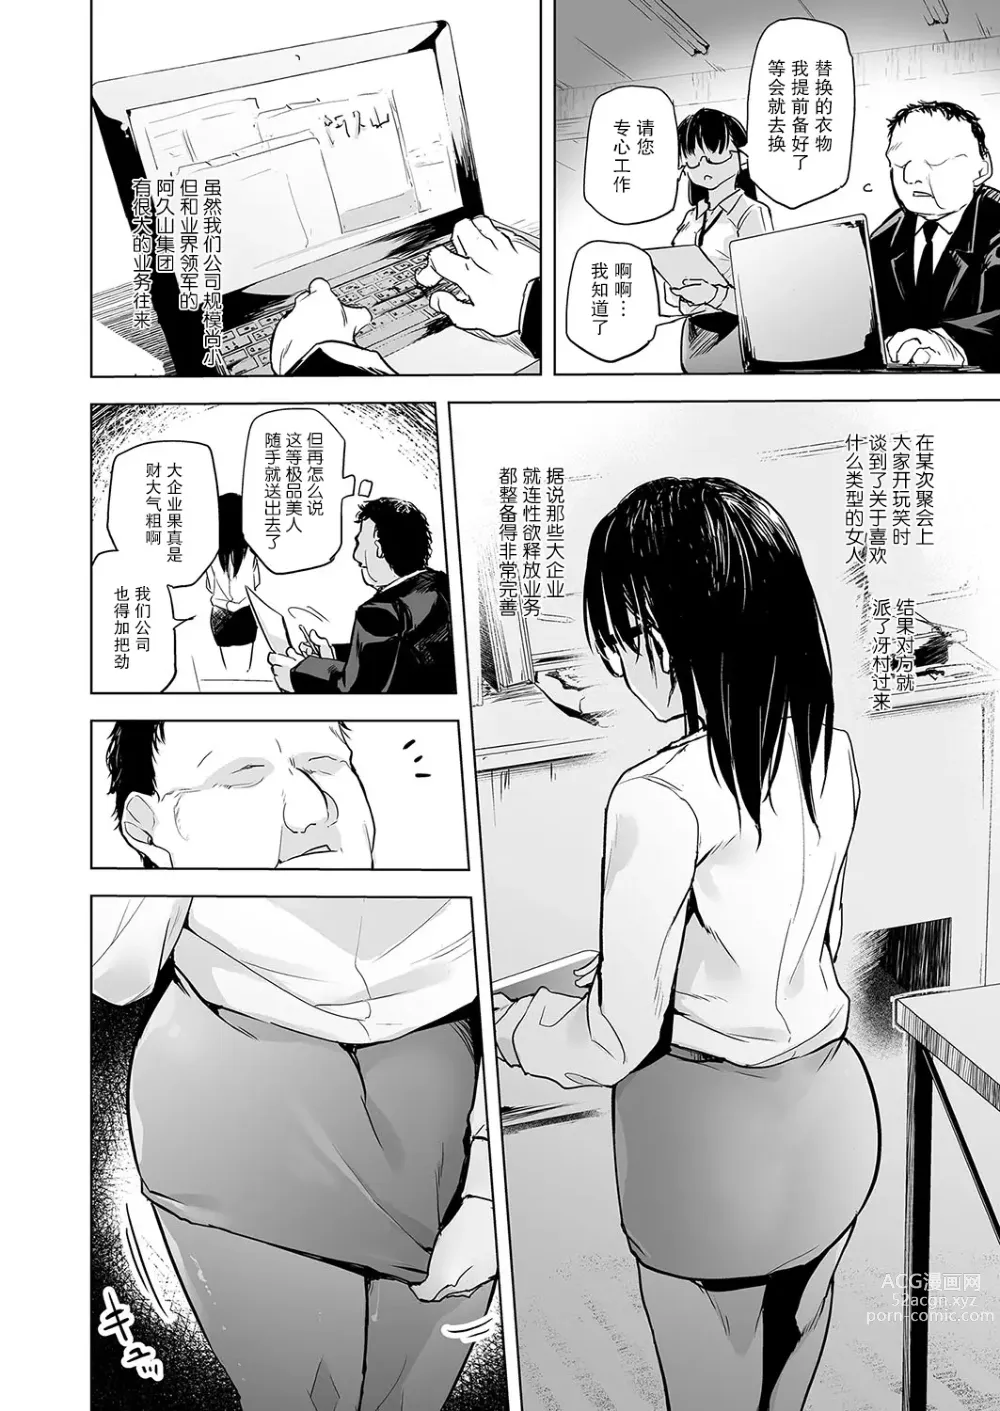 Page 8 of manga Pawahara no shoseijutsu